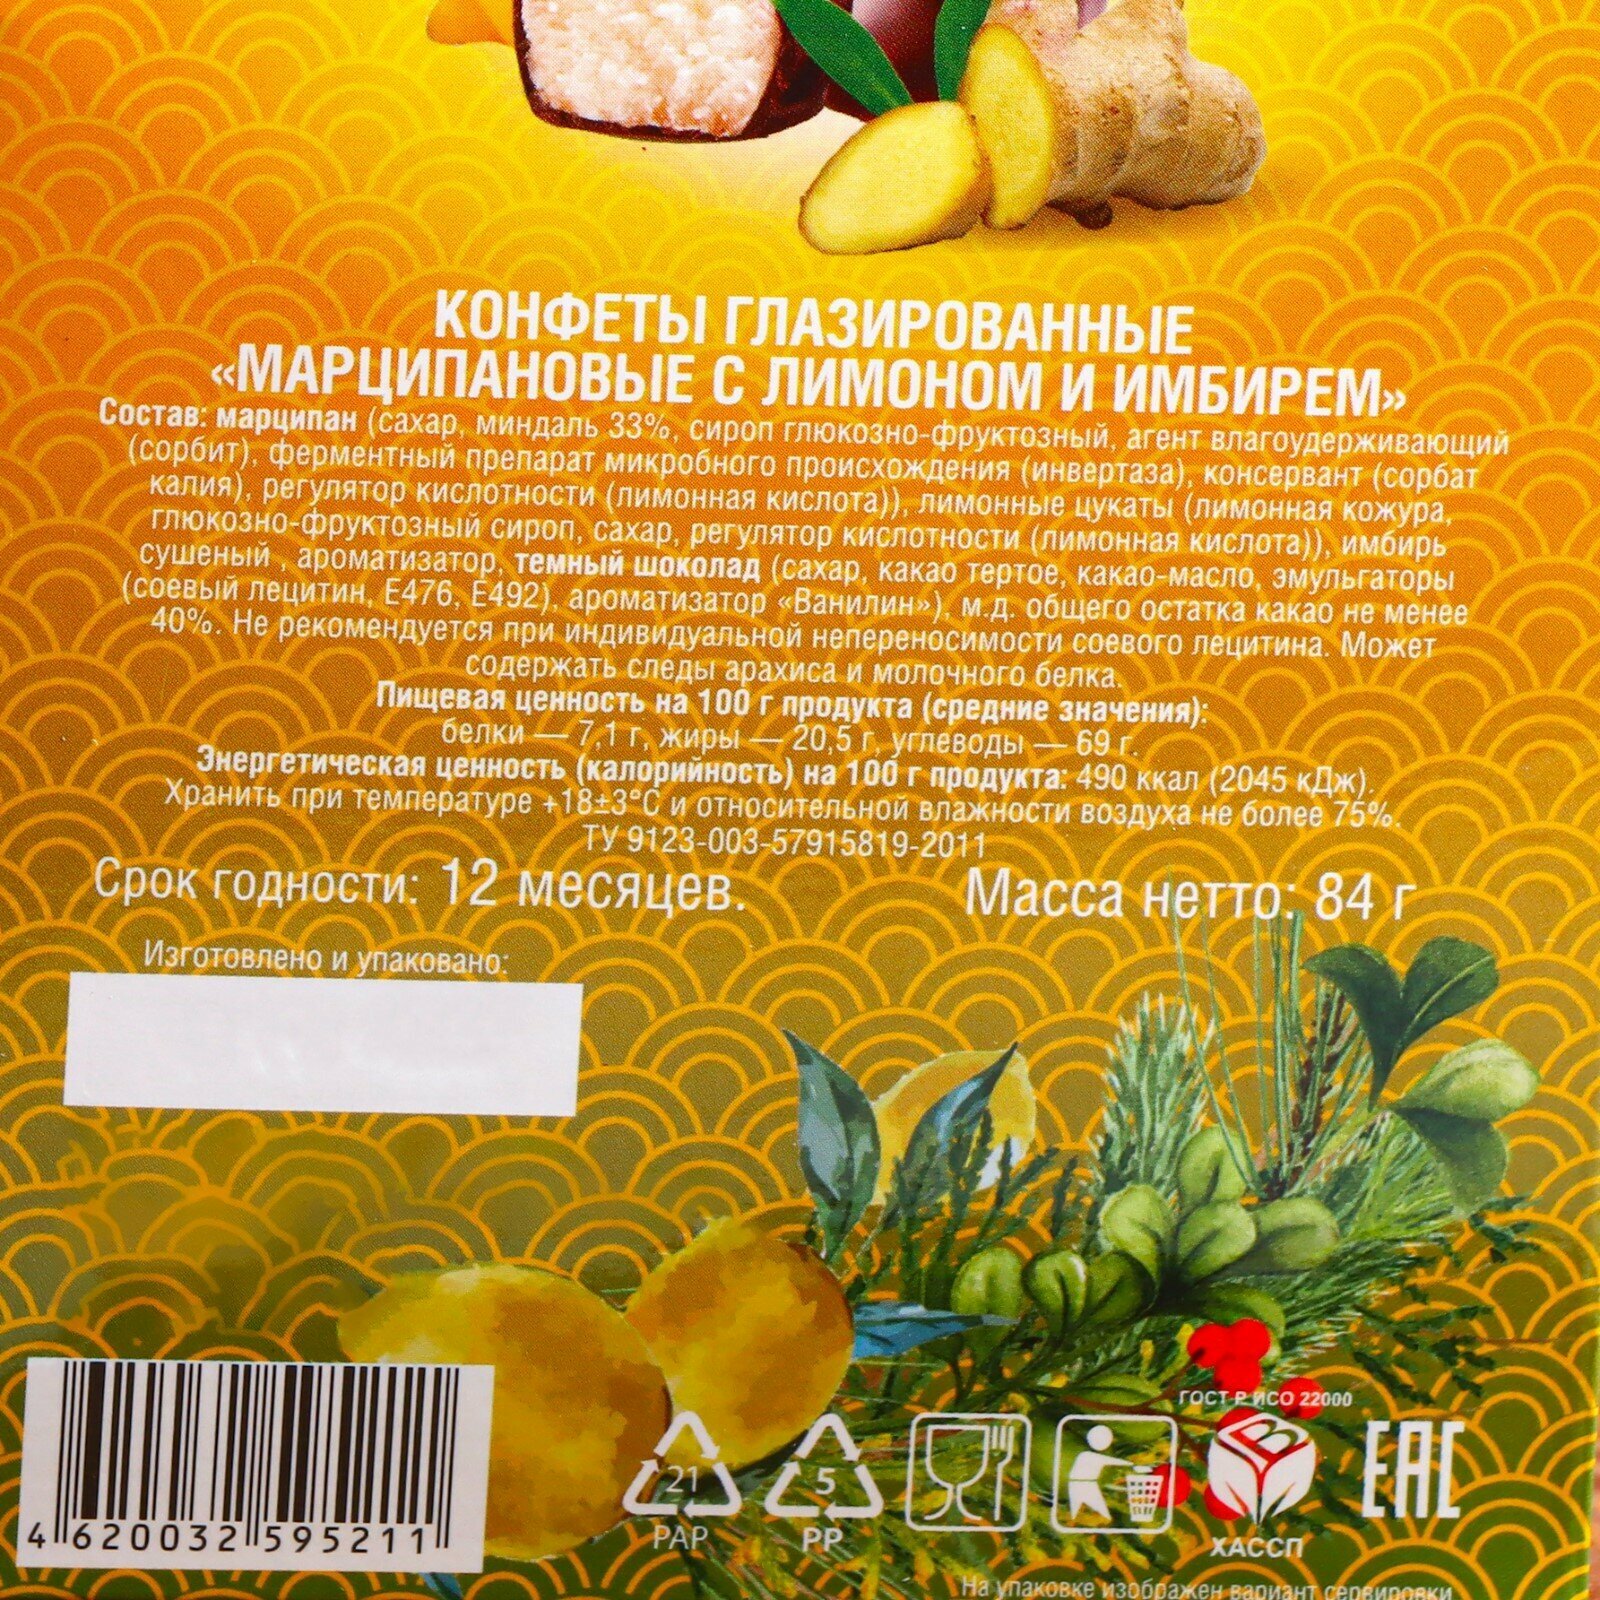 Конфеты в коробке, конфеты марципановые Grondard глазированные "Марципан с лимоном и имбирем", 84 г